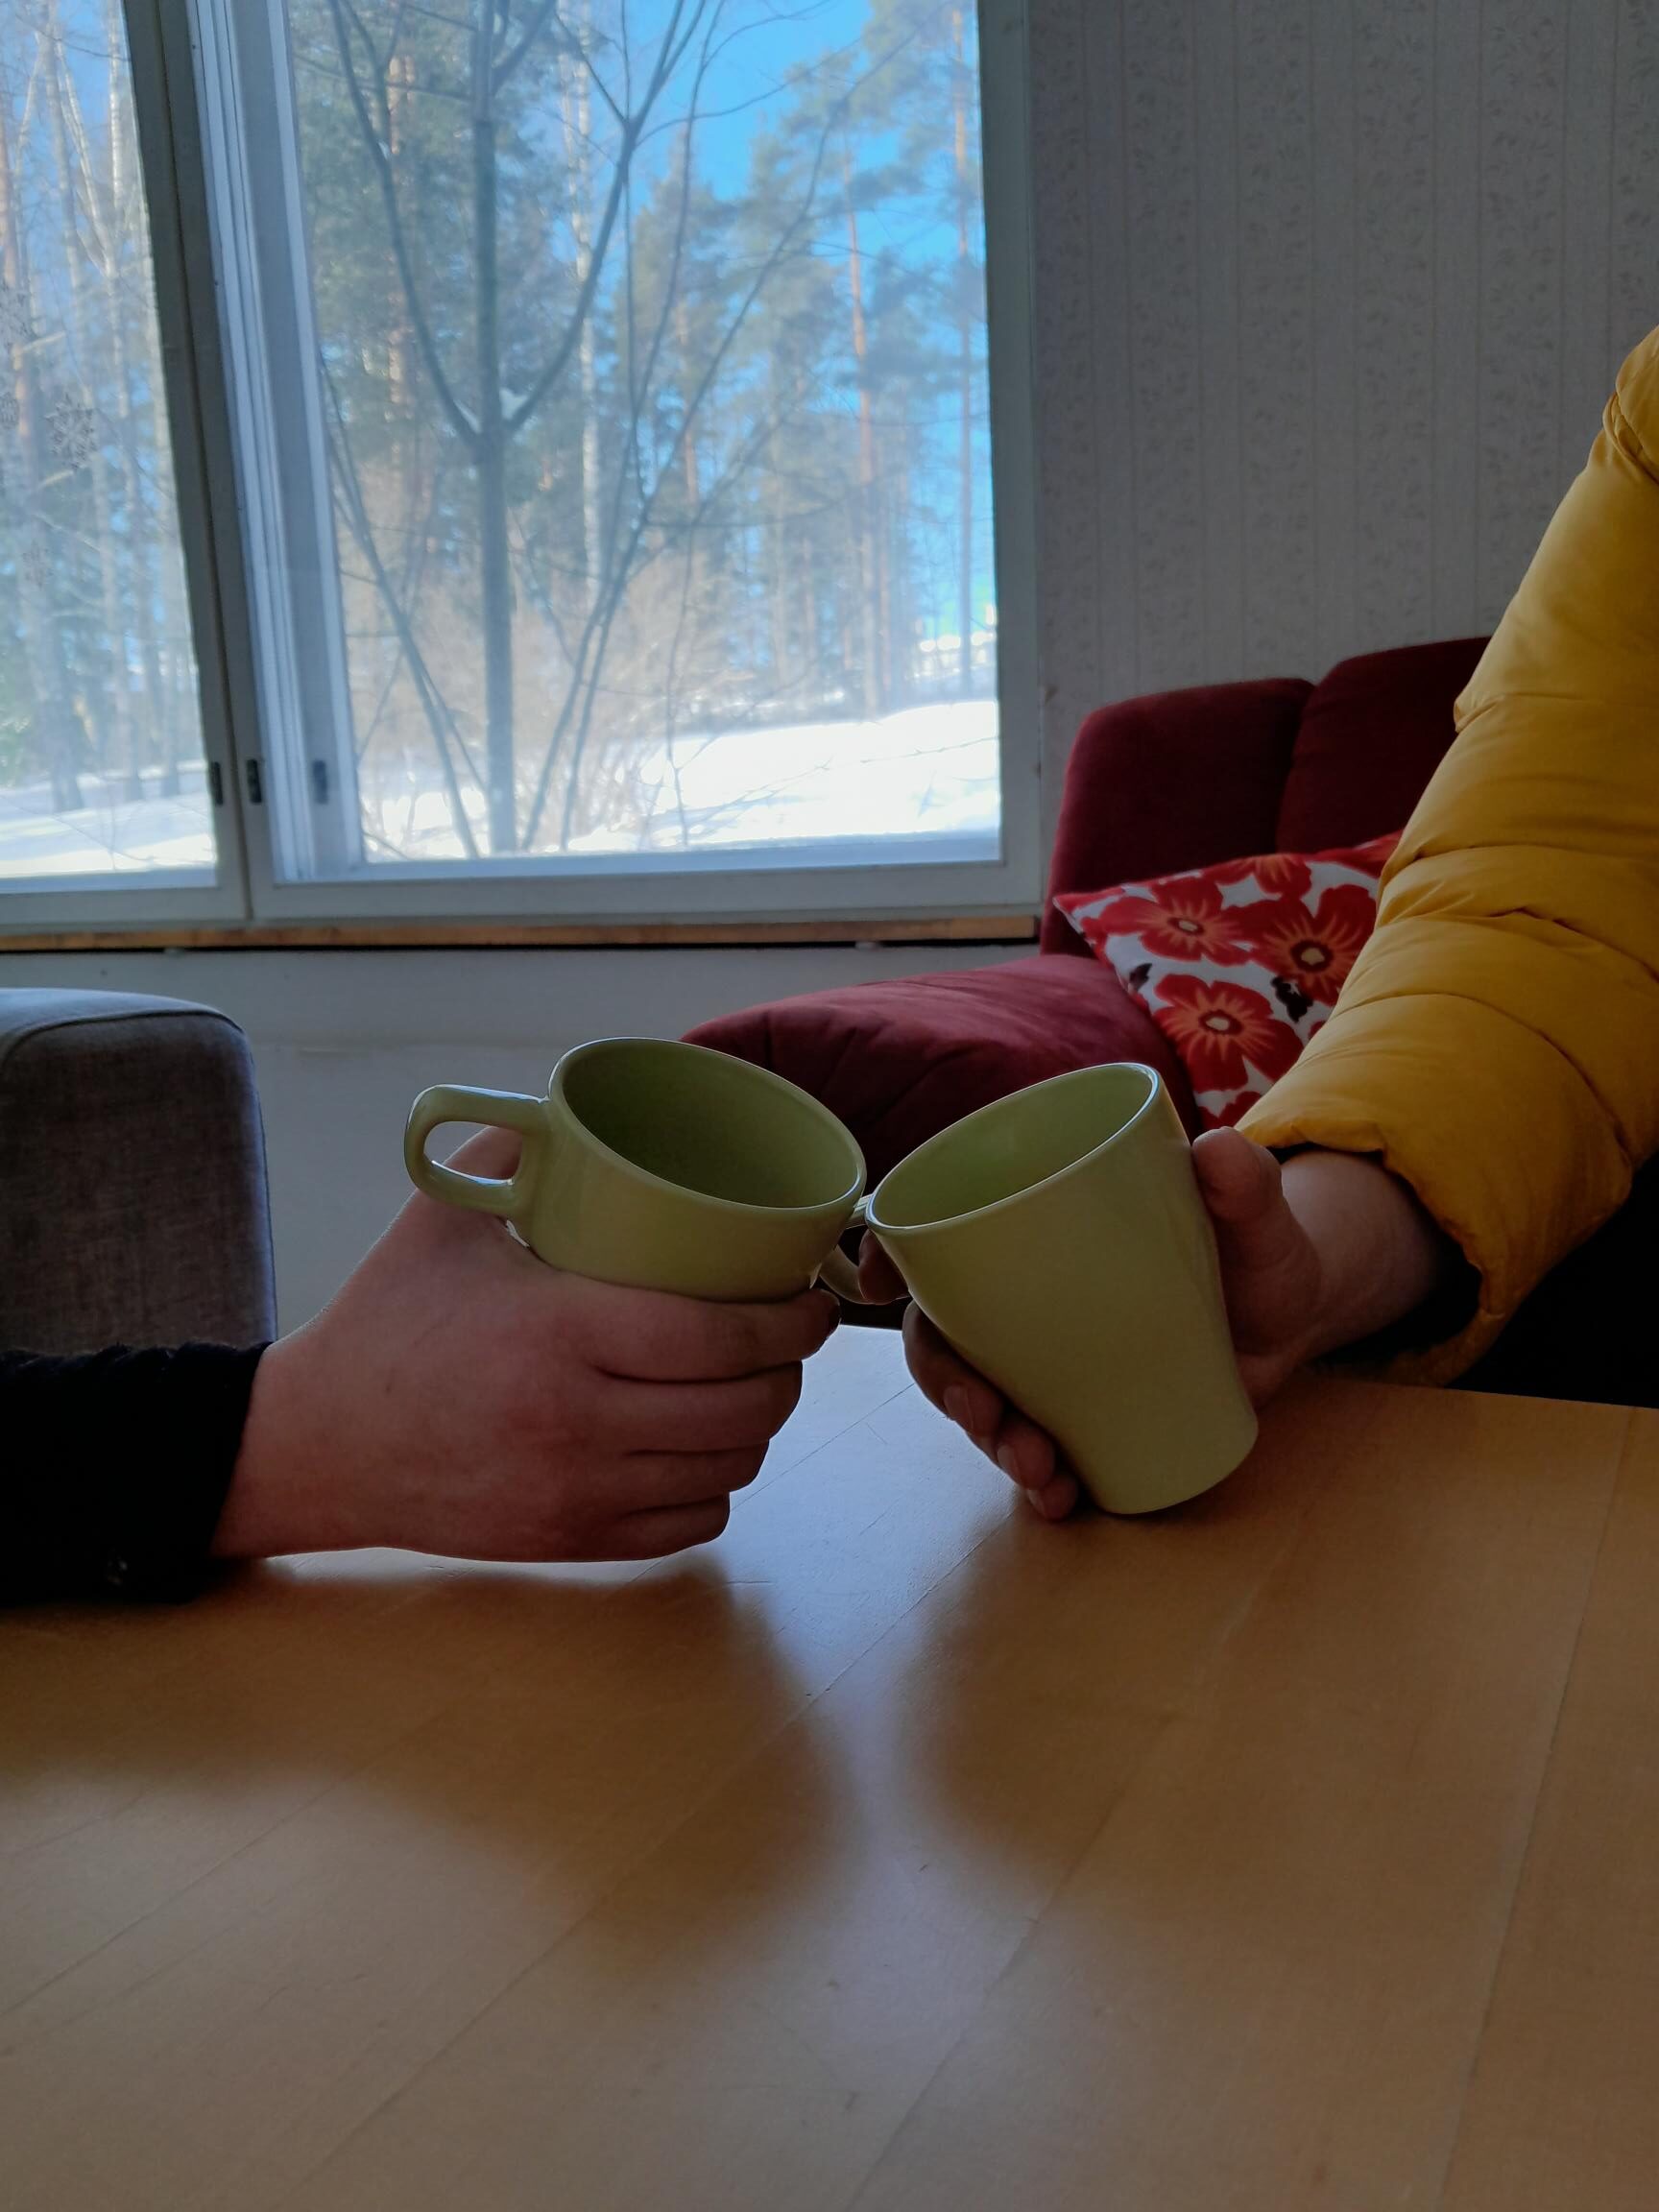 Kuvassa kaksi henkilöä kahvikupit kädessä pöydän ääressä. Kuvassa näkyvät henkilöistä vain kädet.